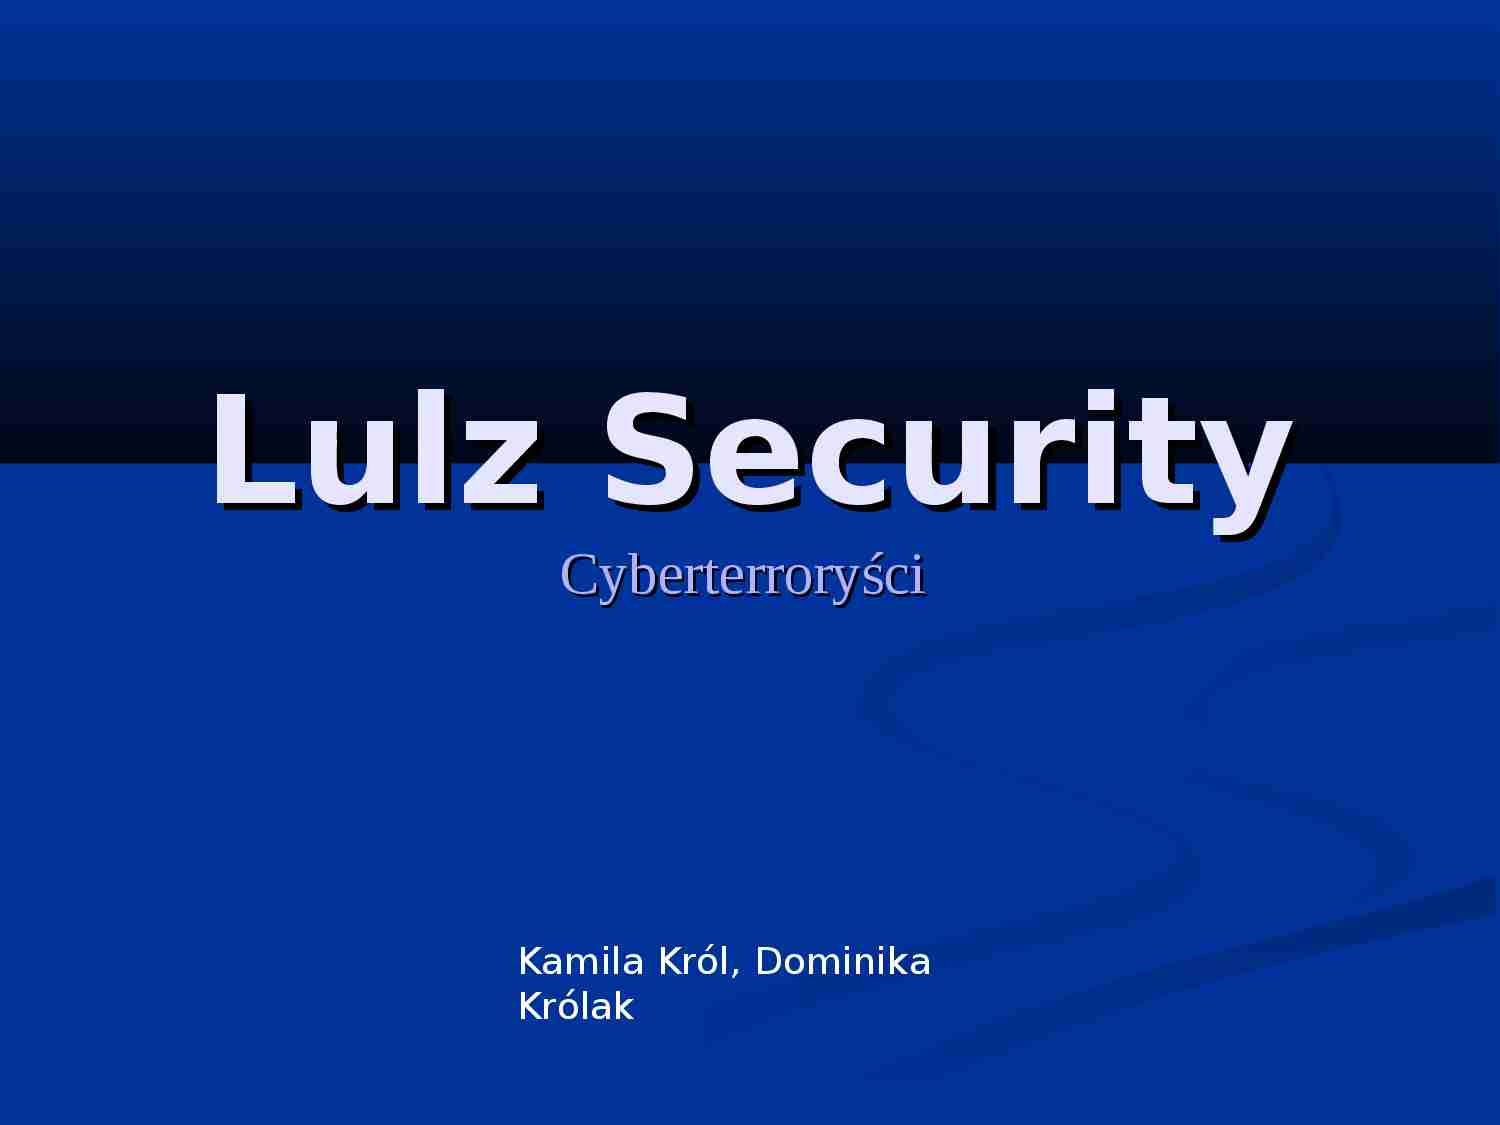 Lulz Security - cyberterroryści - prezentacja - strona 1